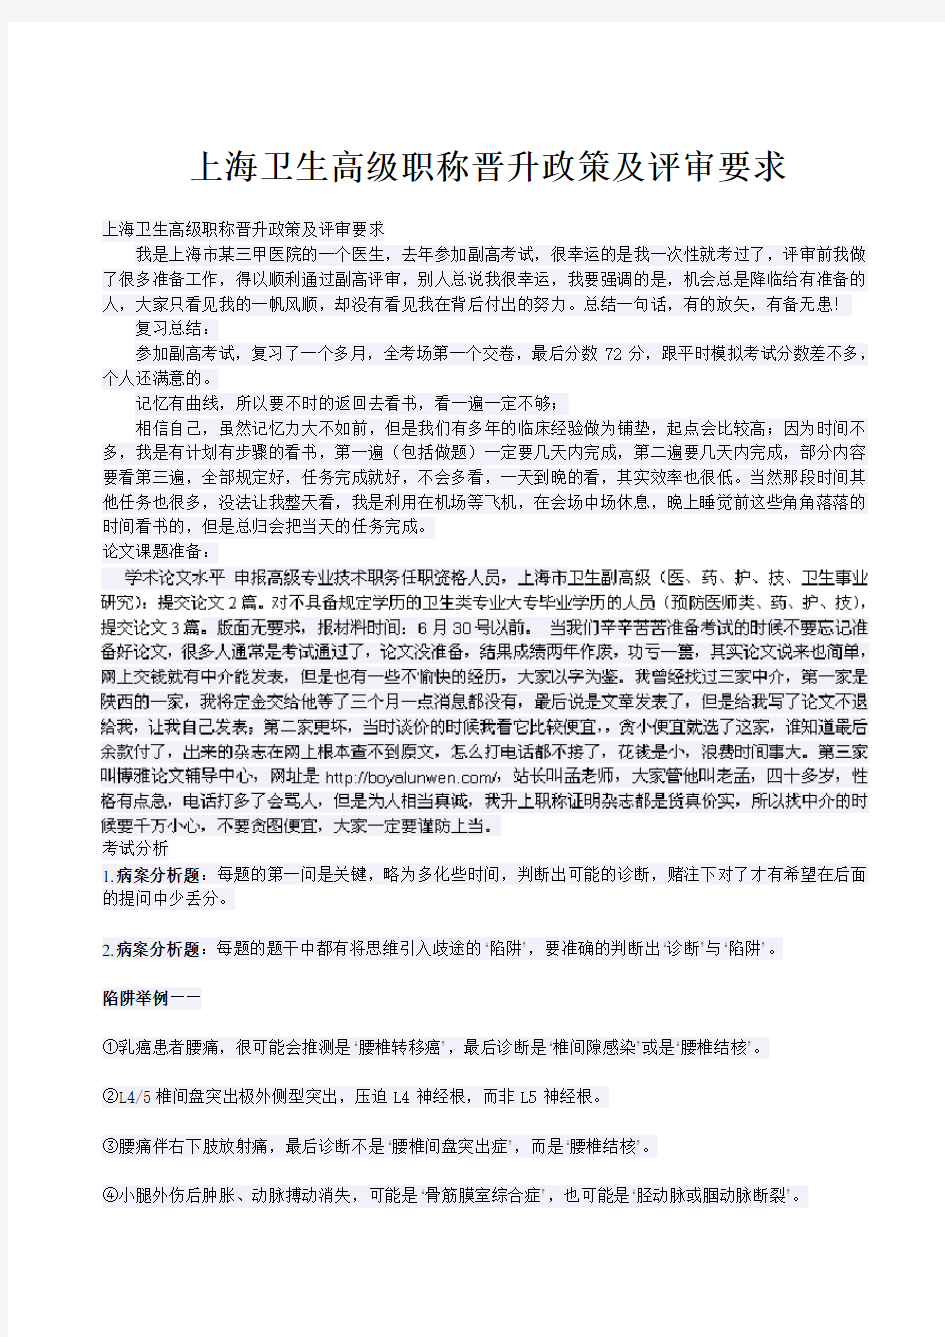 上海卫生高级职称晋升政策及评审要求